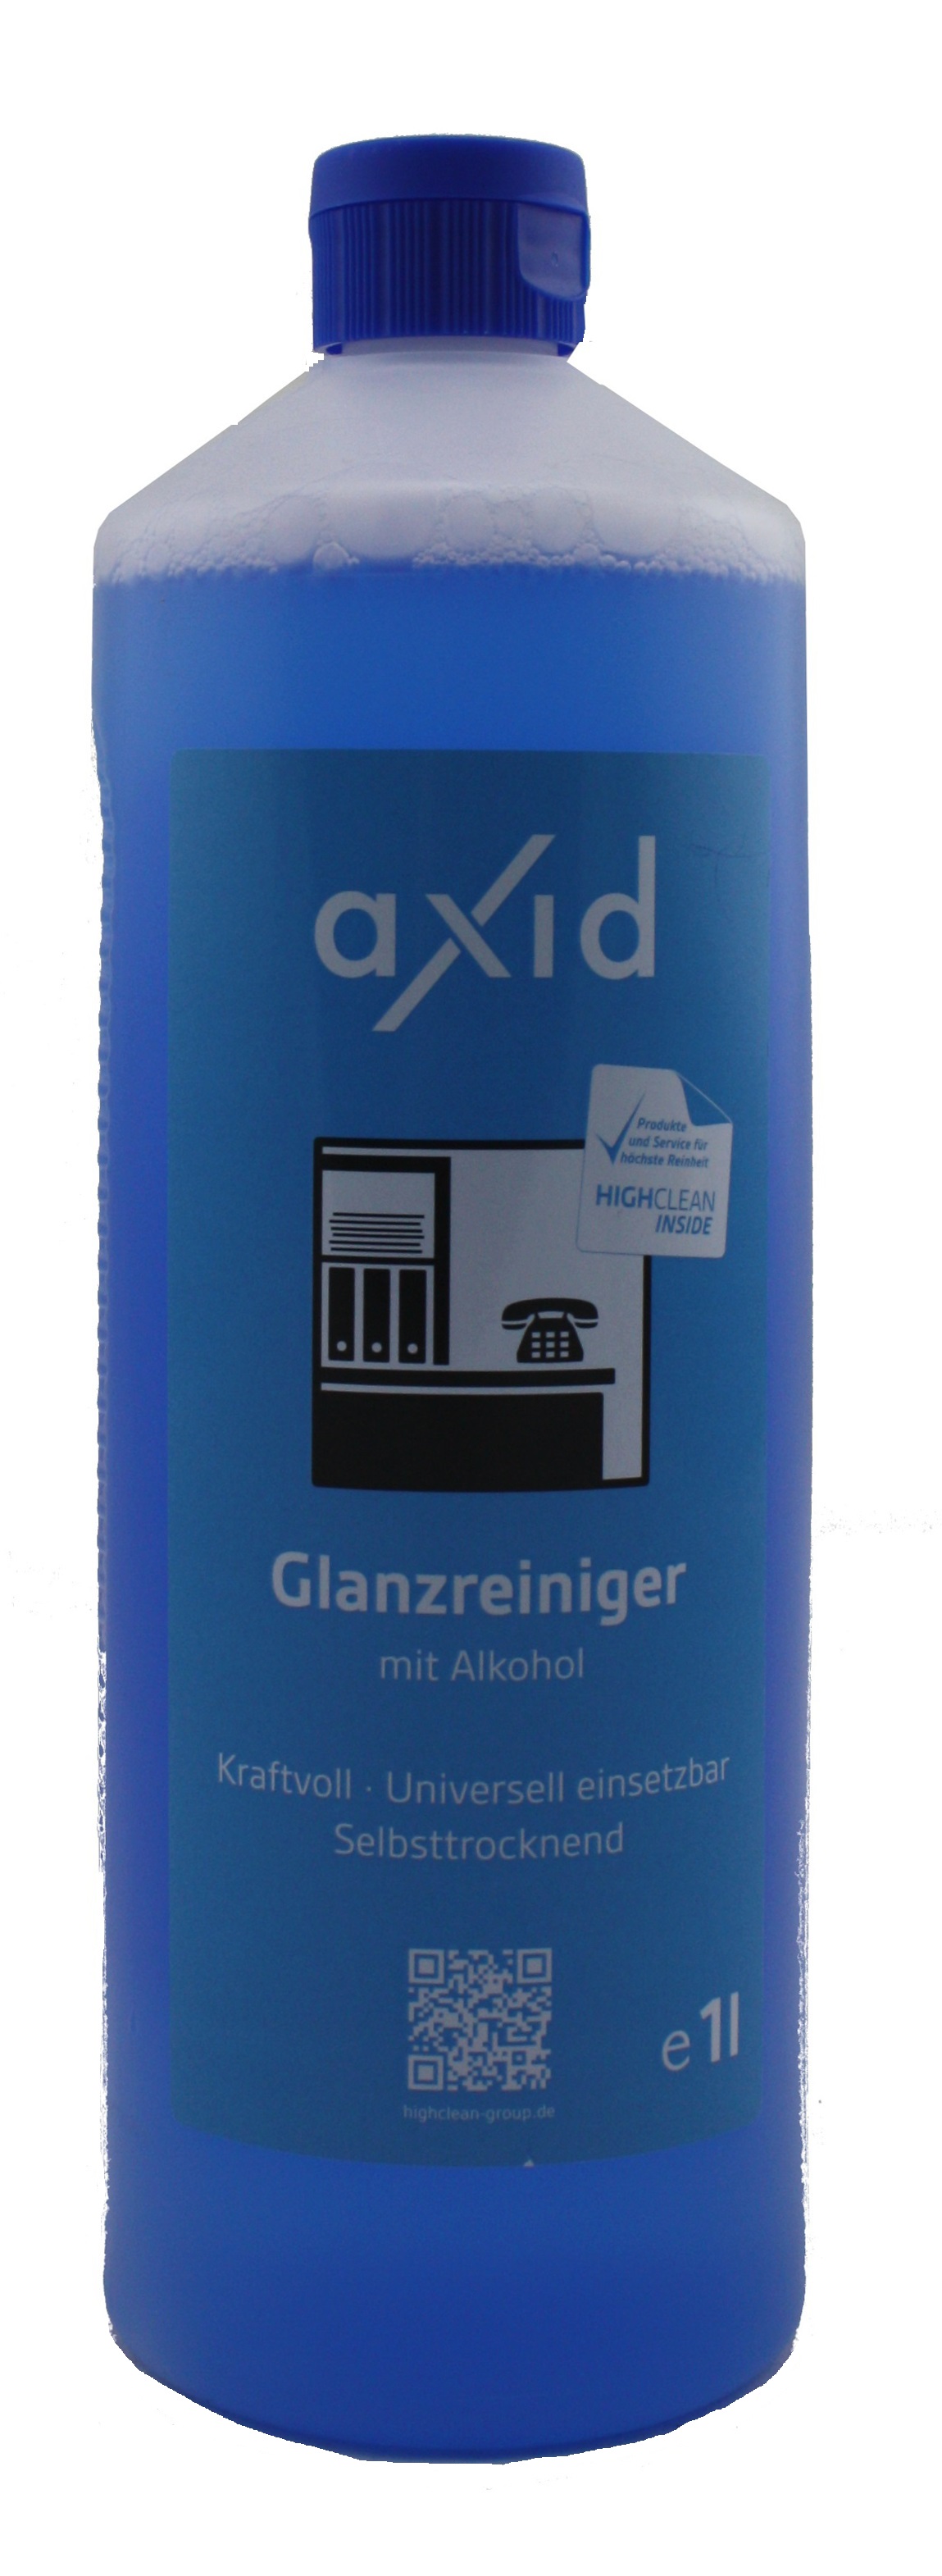 Axid - Glanzreiniger mit Alkohol 1 Liter Flasche (ehemals Clearfixxx)